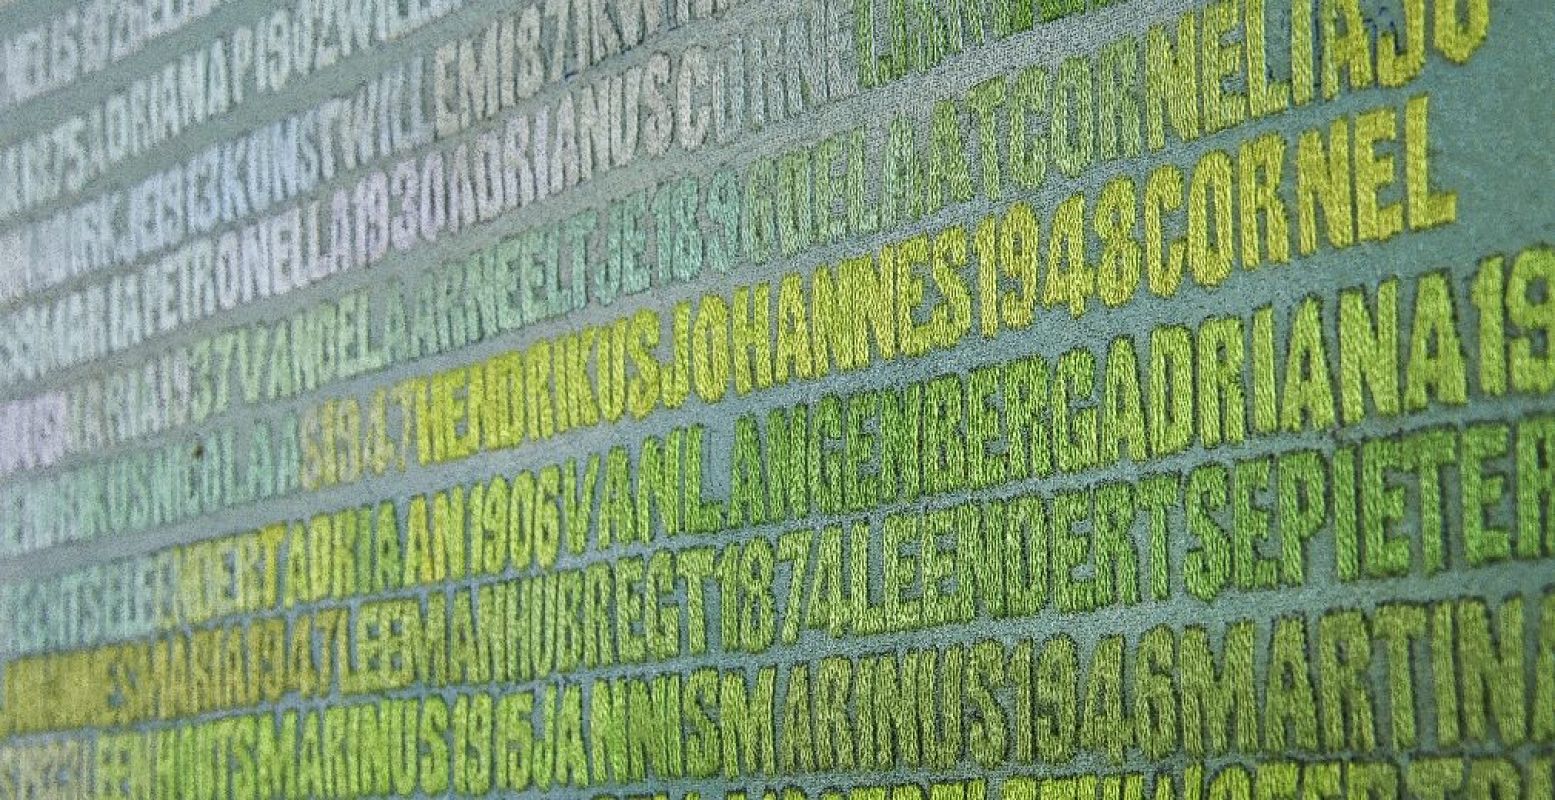 De Verdronkenen (2003-2008), Vijf panelen met de namen van alle 1836 slachtoffers van de Watersnoodramp van 1 februari 1953. Monumentaal werk van Miep van Riessen in acryl en garens op doek - 134 x 236,8 cm. StichtingMiepvanRiessen Foto: © Jan van de Ven